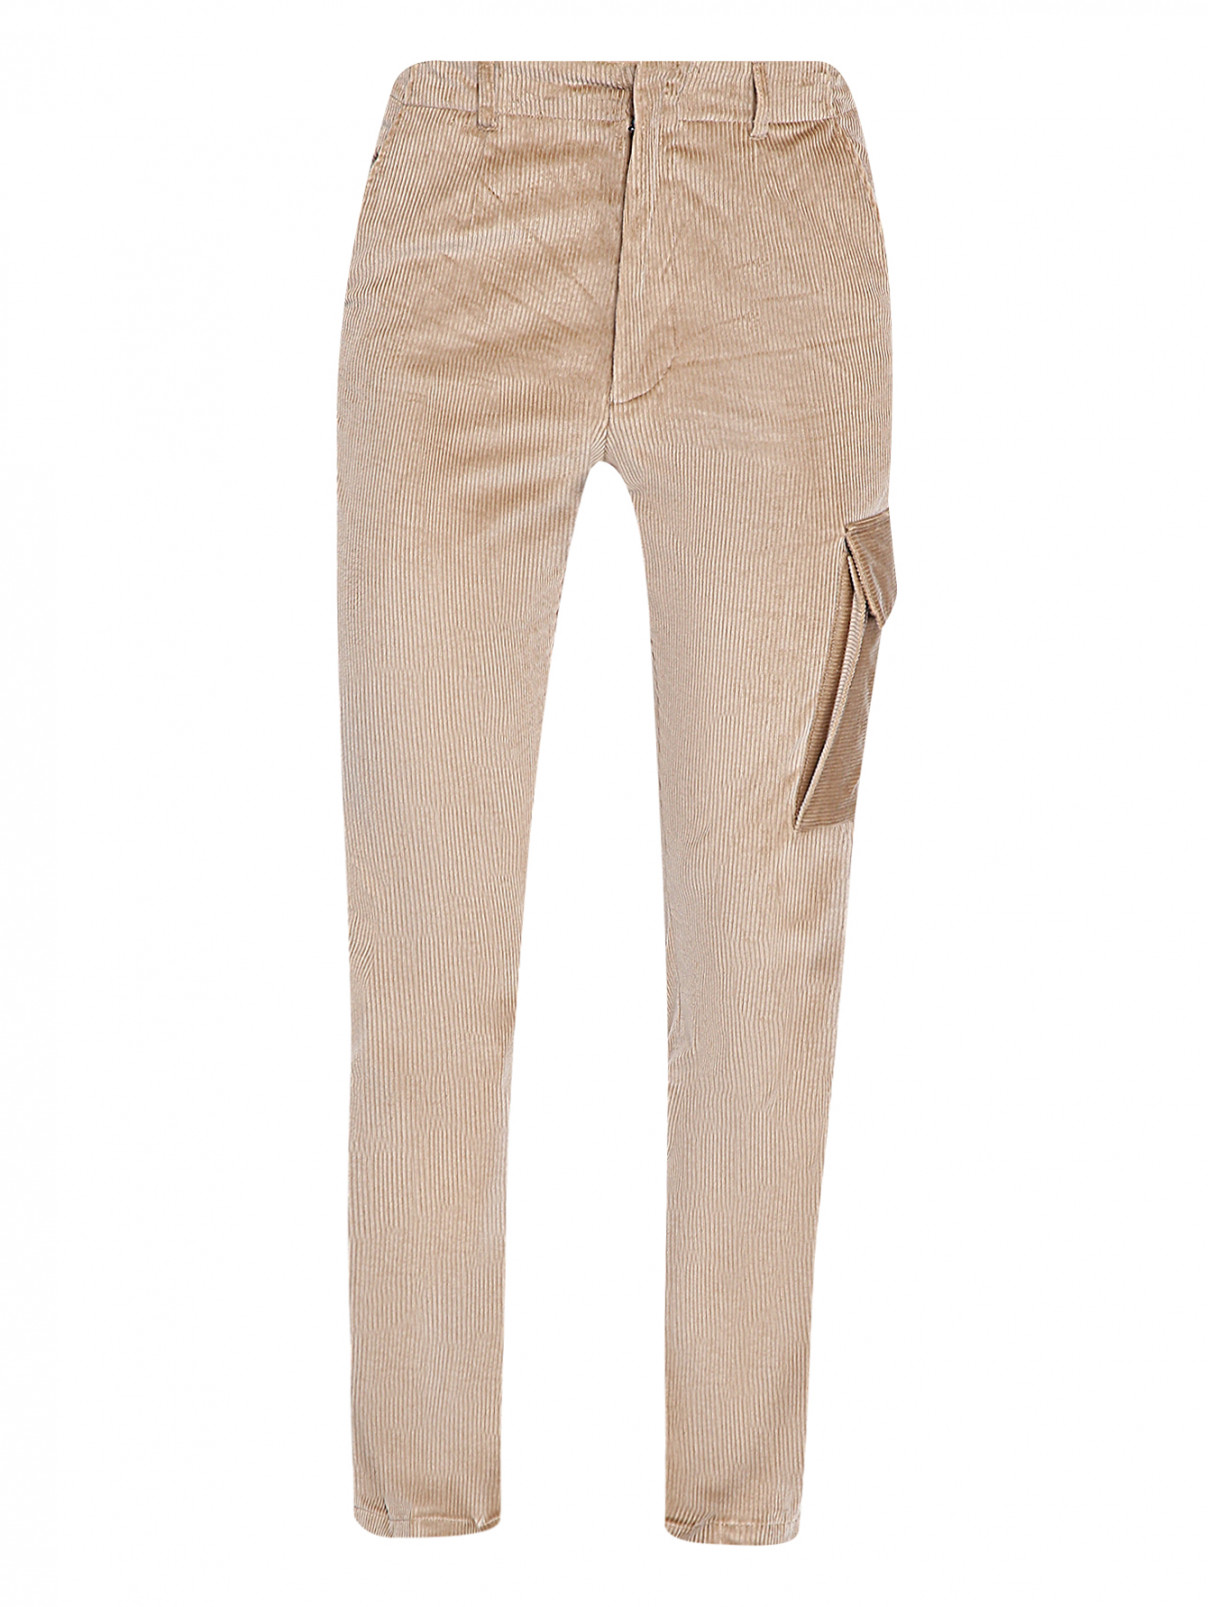 Вельветовые брюки из хлопка с накладным карманом Paul Smith  –  Общий вид  – Цвет:  Бежевый